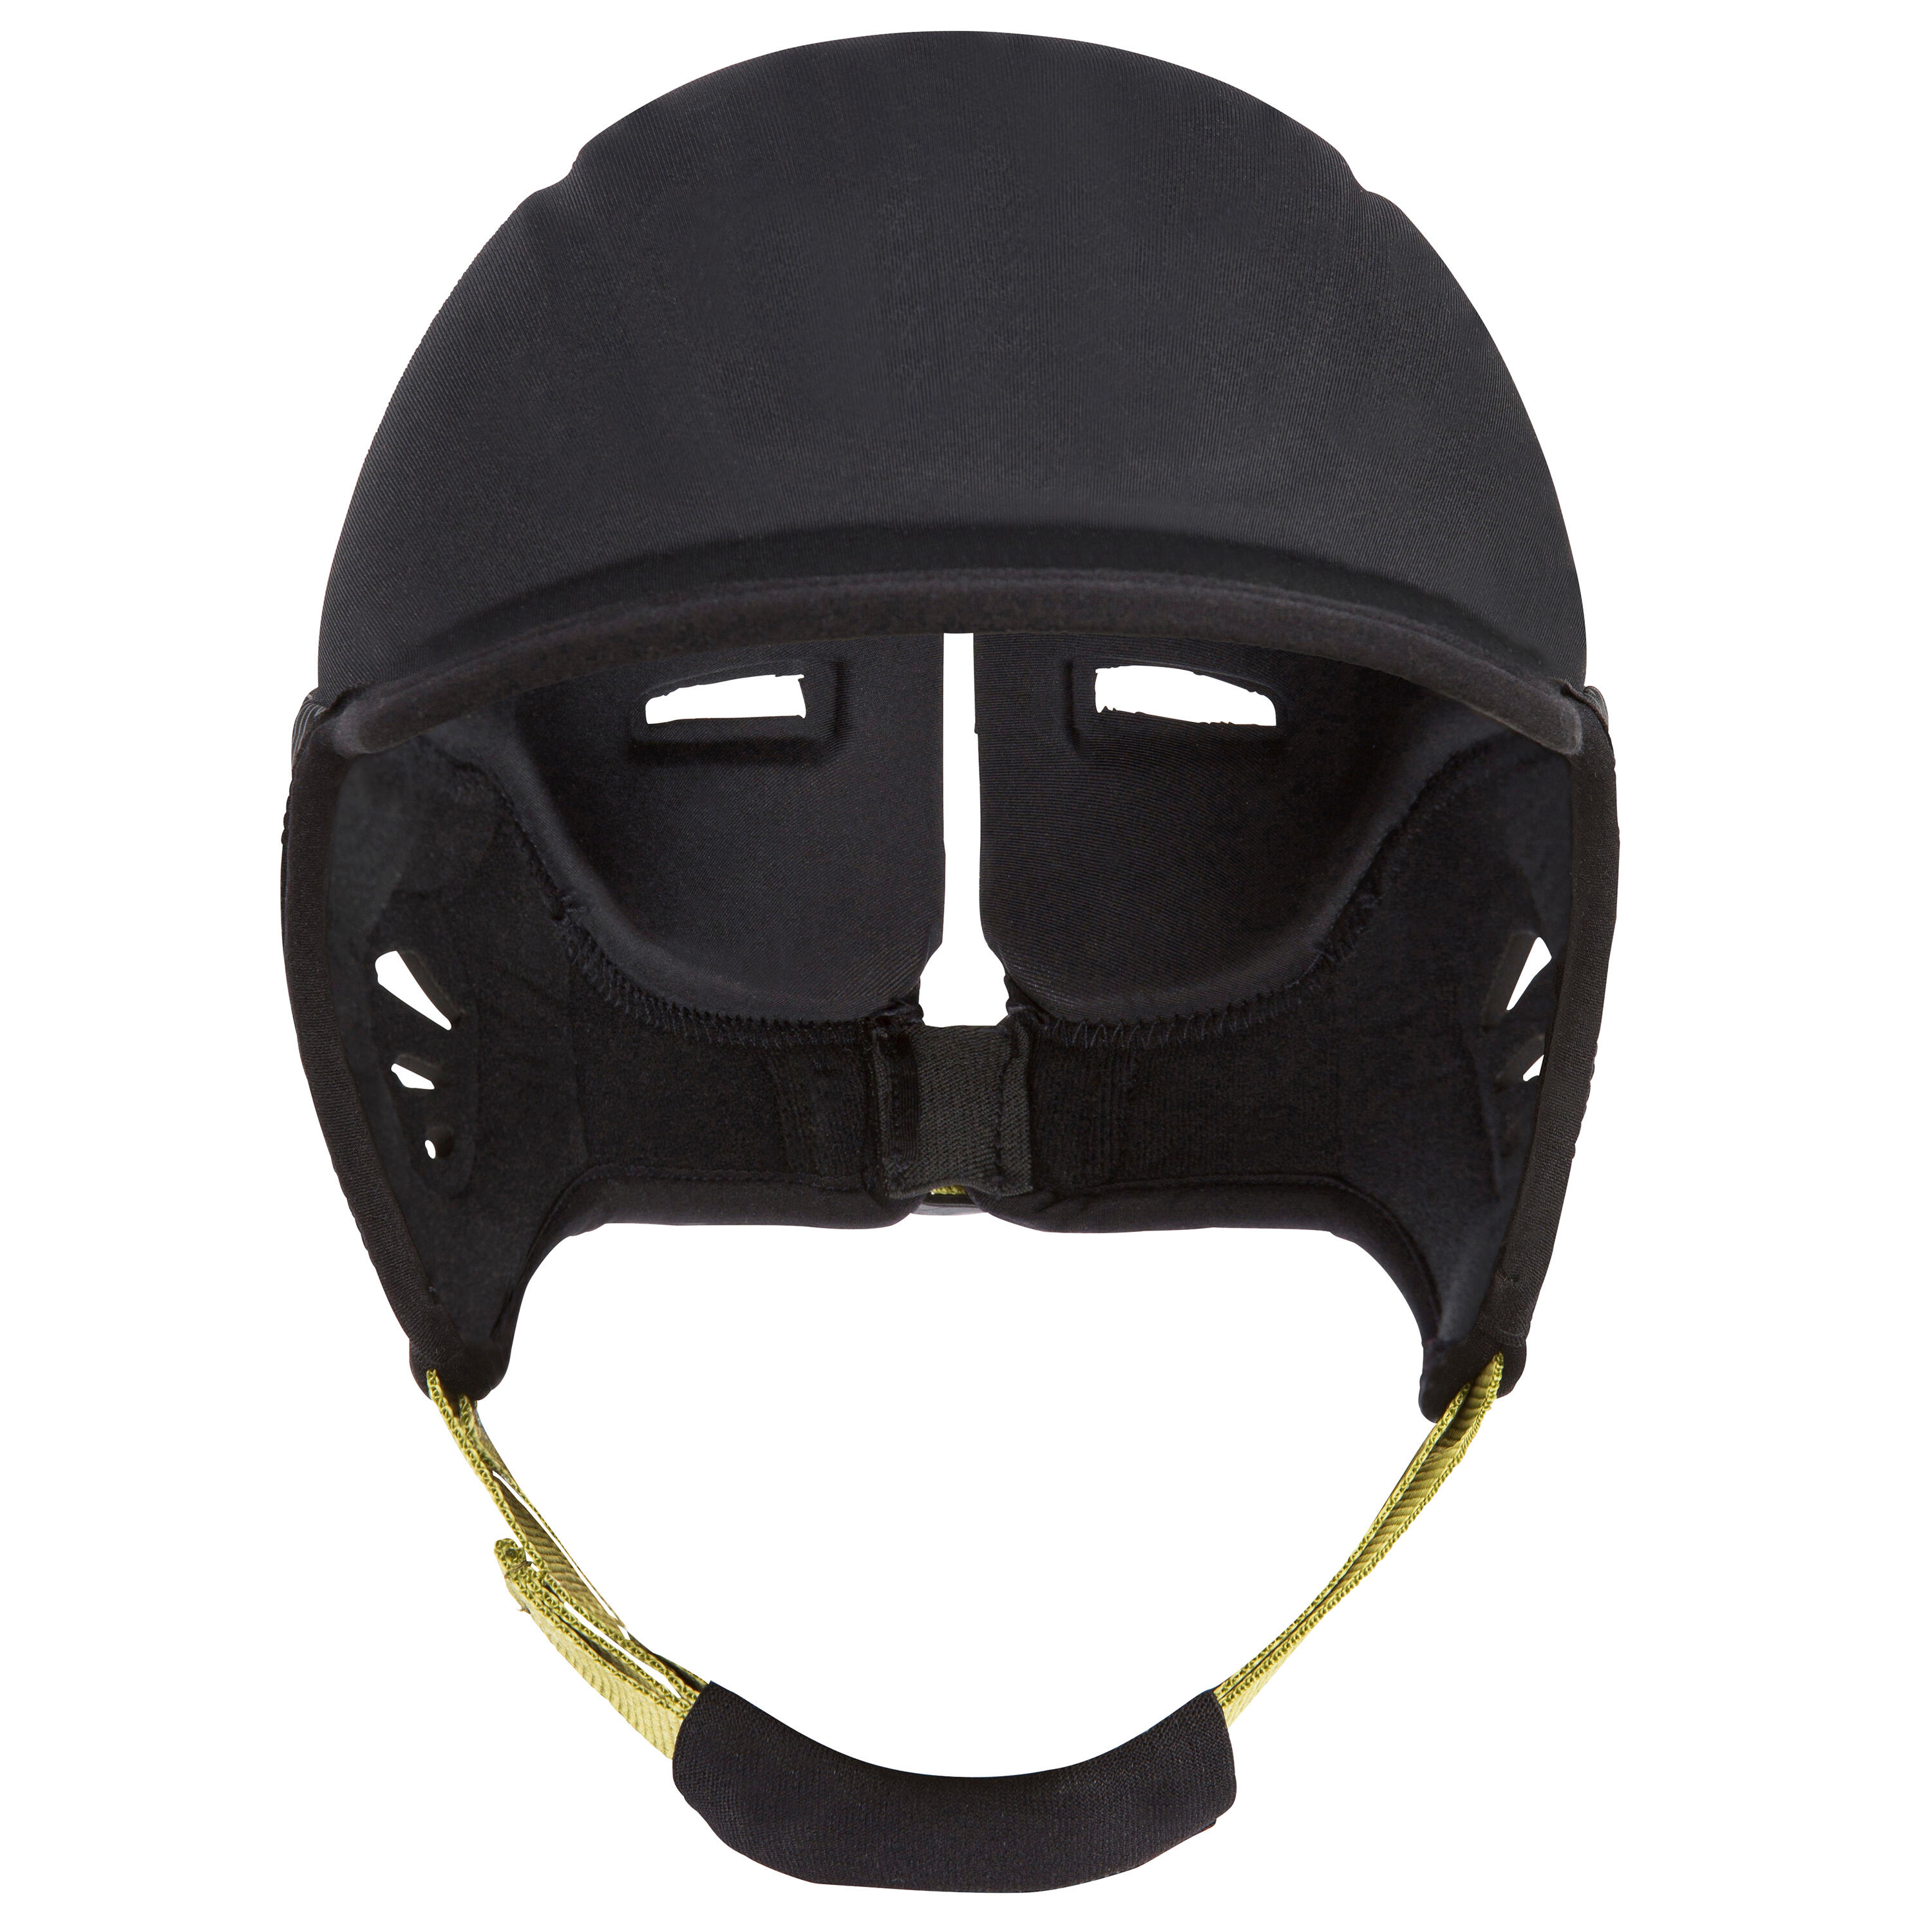 Helmet for surfing. black 9/9